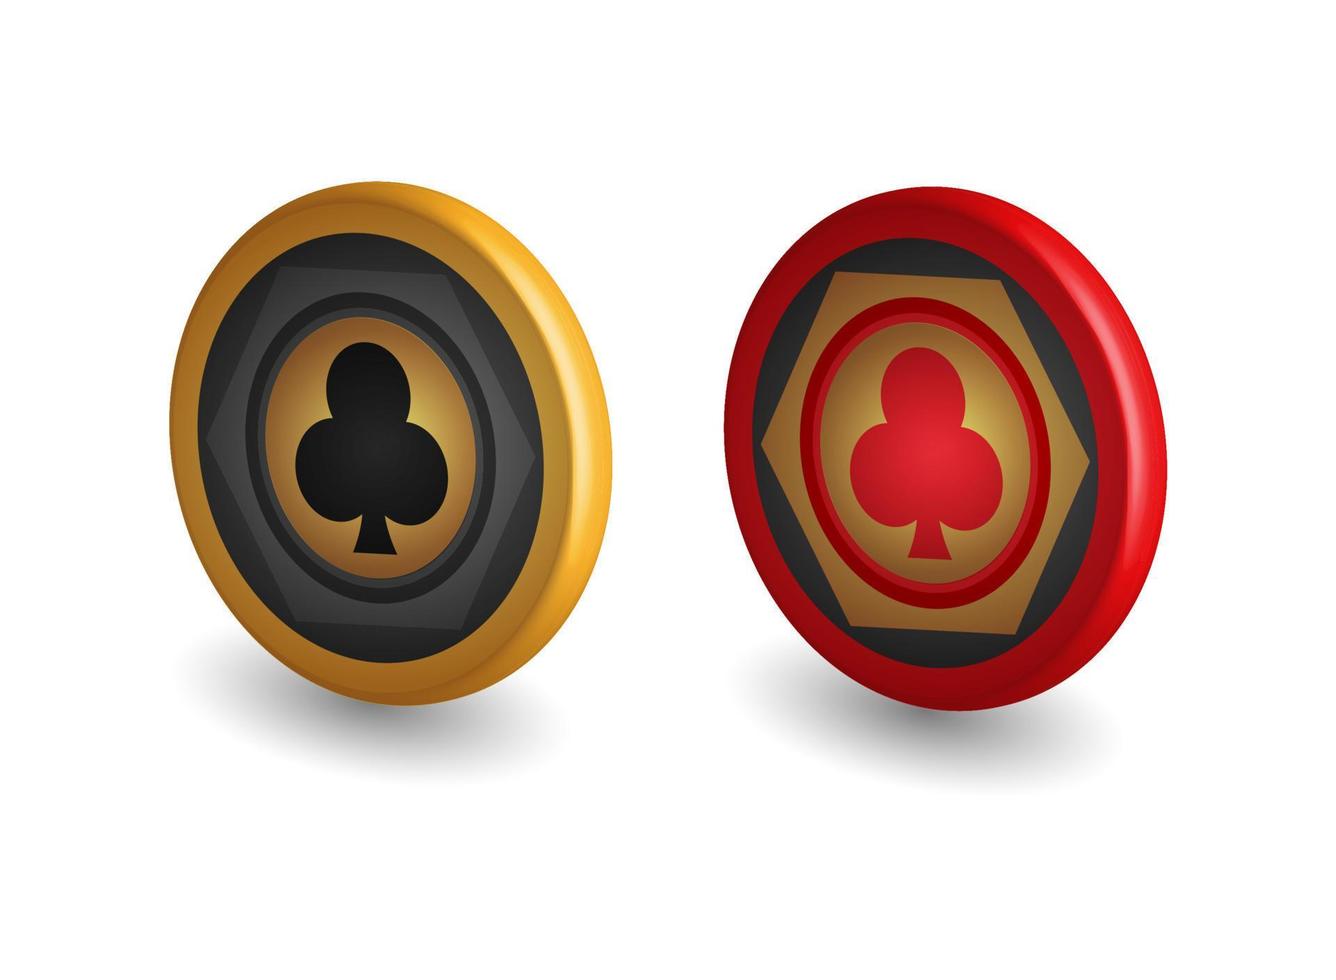 fichas de póquer doradas y rojas, con símbolos de club, elementos de diseño de juegos, ilustración vectorial 3d, vector